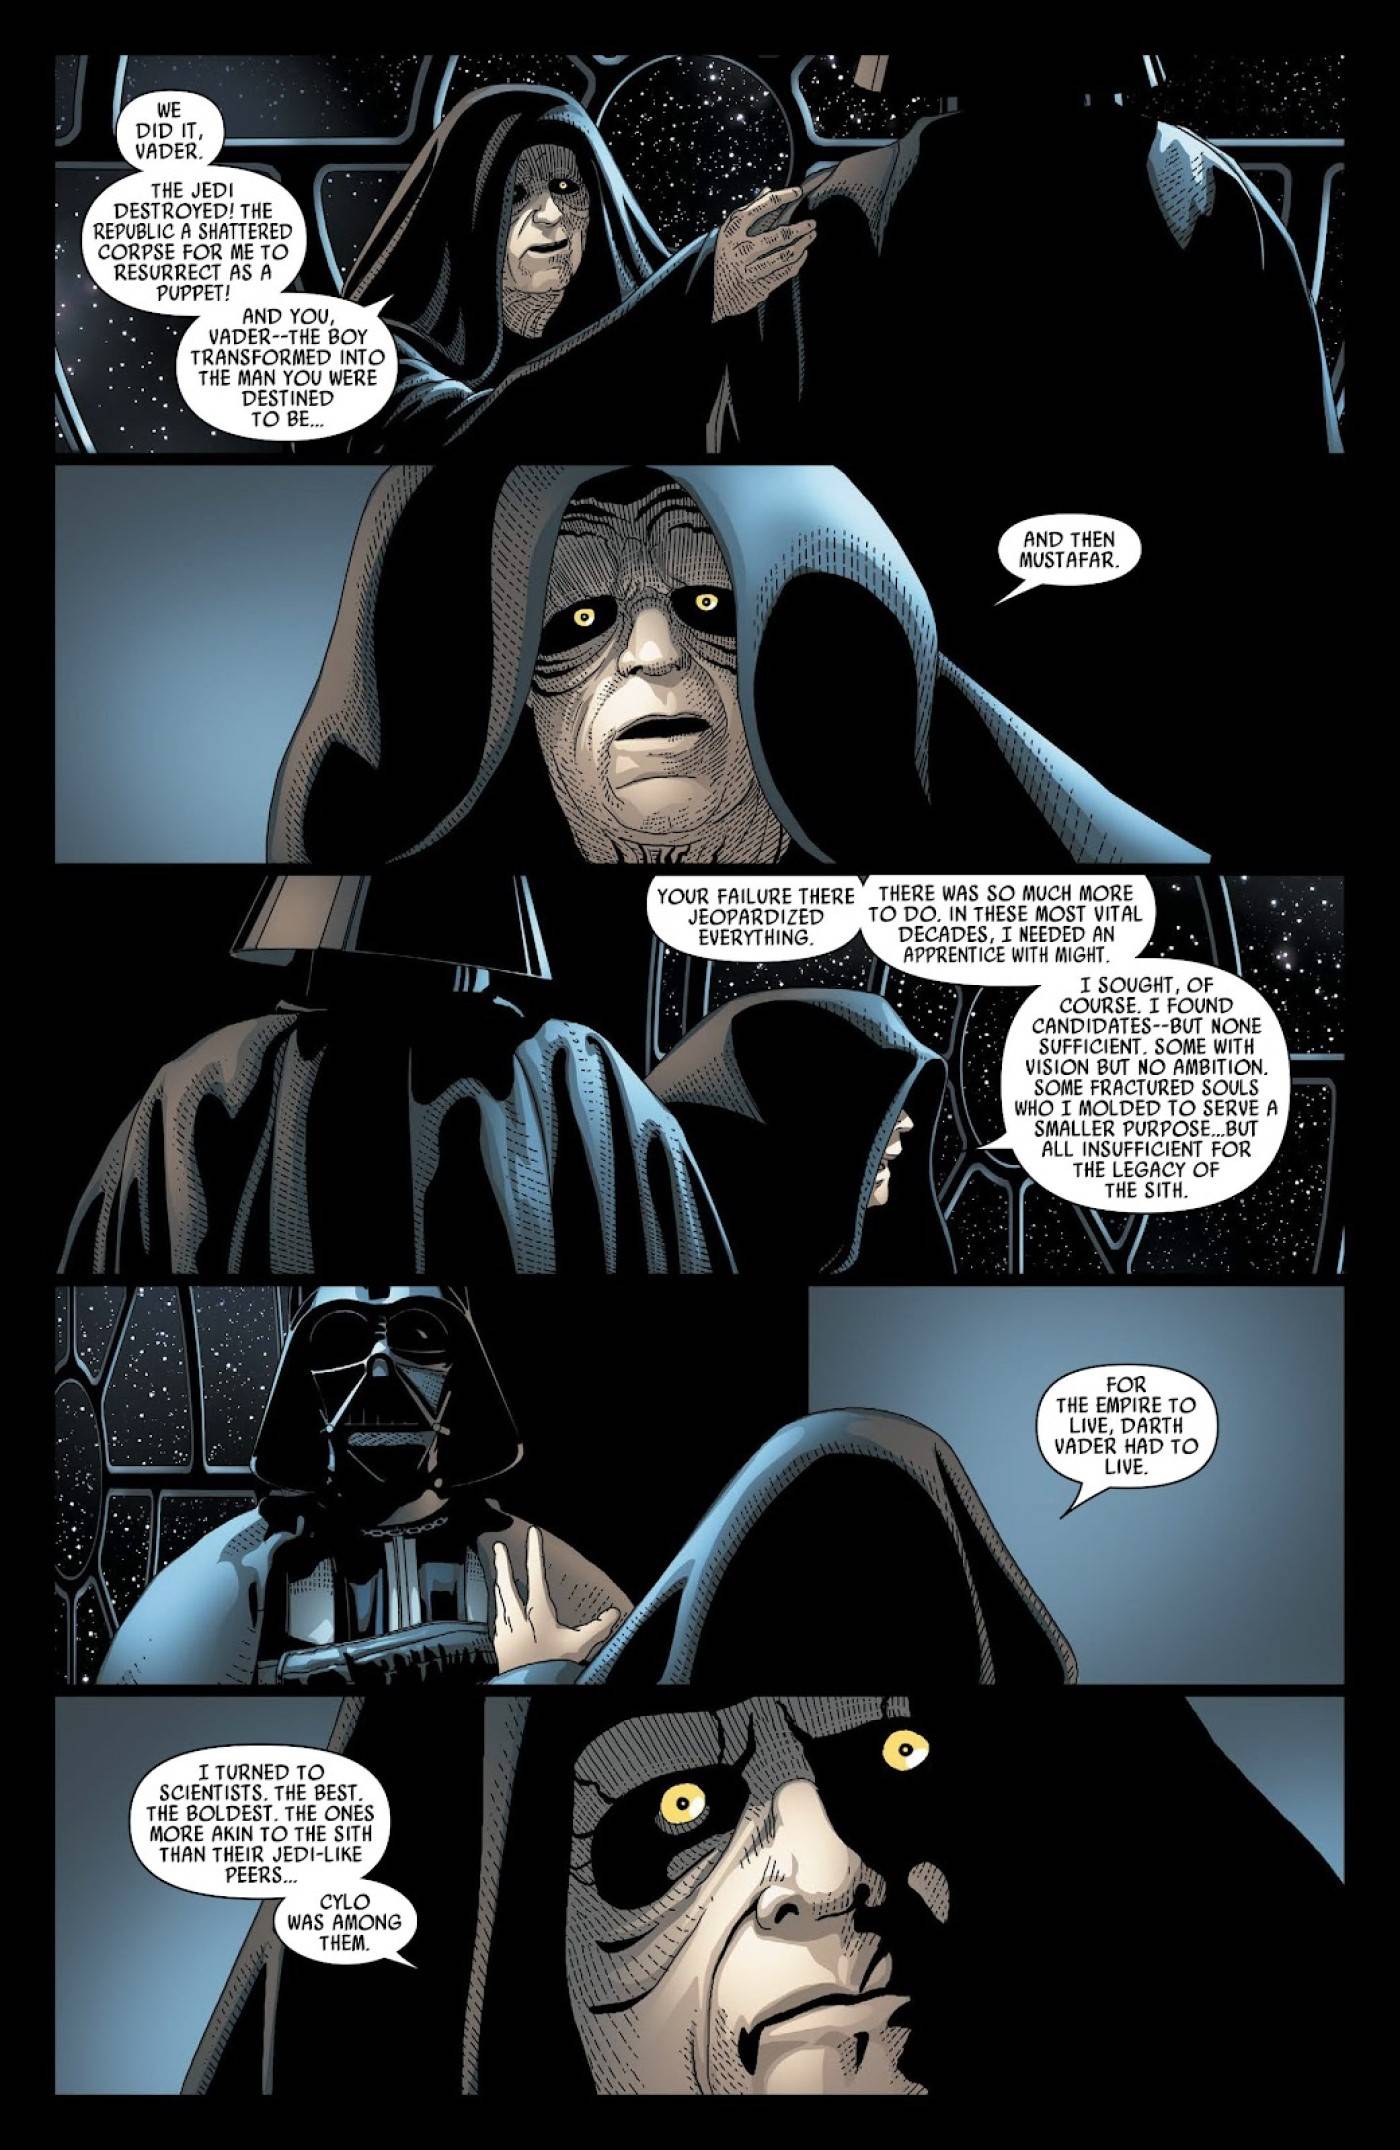 Palpatine e Vader falando.